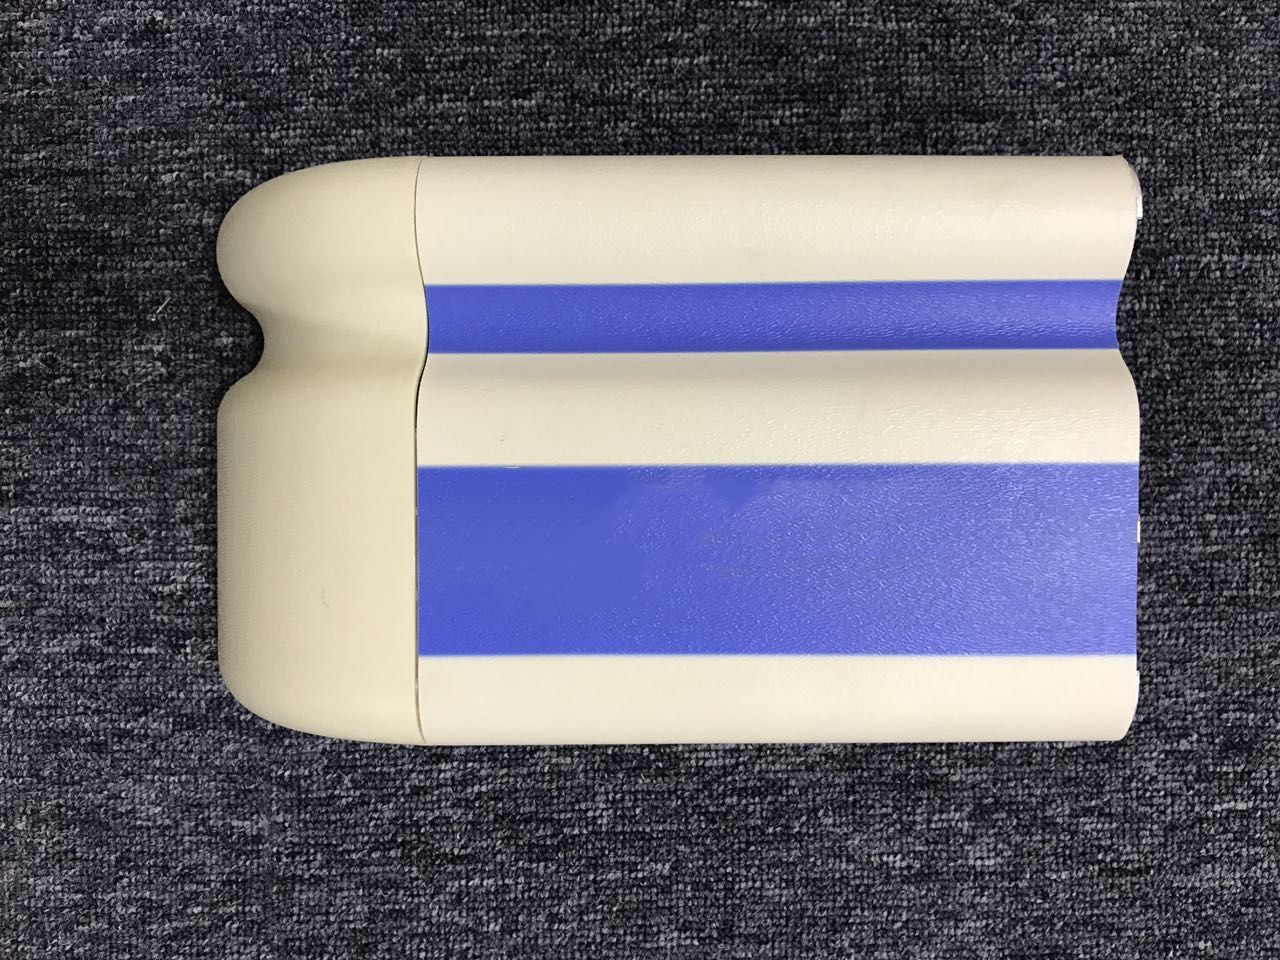 醫用防撞扶手LE-159雙藍條紋-勞恩塑料制品